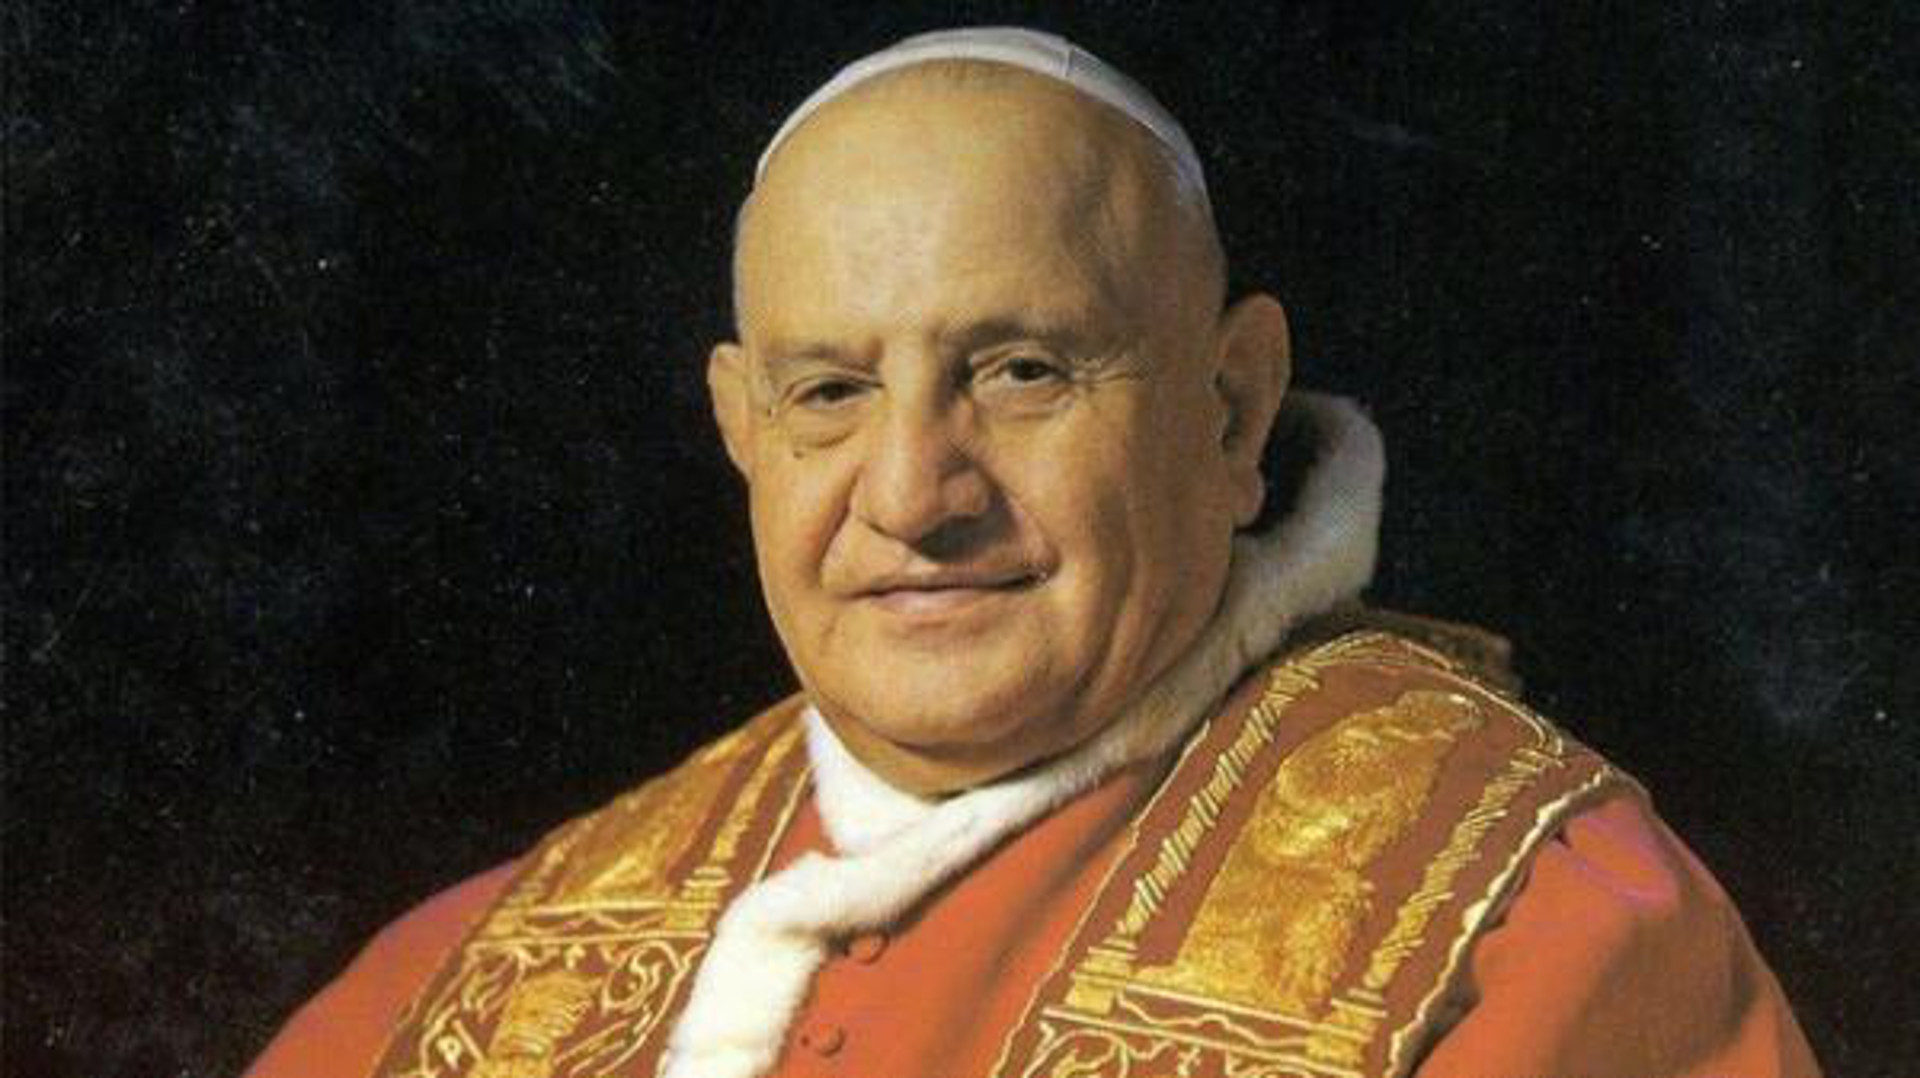 Les reliques de Jean XXIII seront exposées à bergame du 24 mai au 10 juin 2018. | Wikimedia Commons